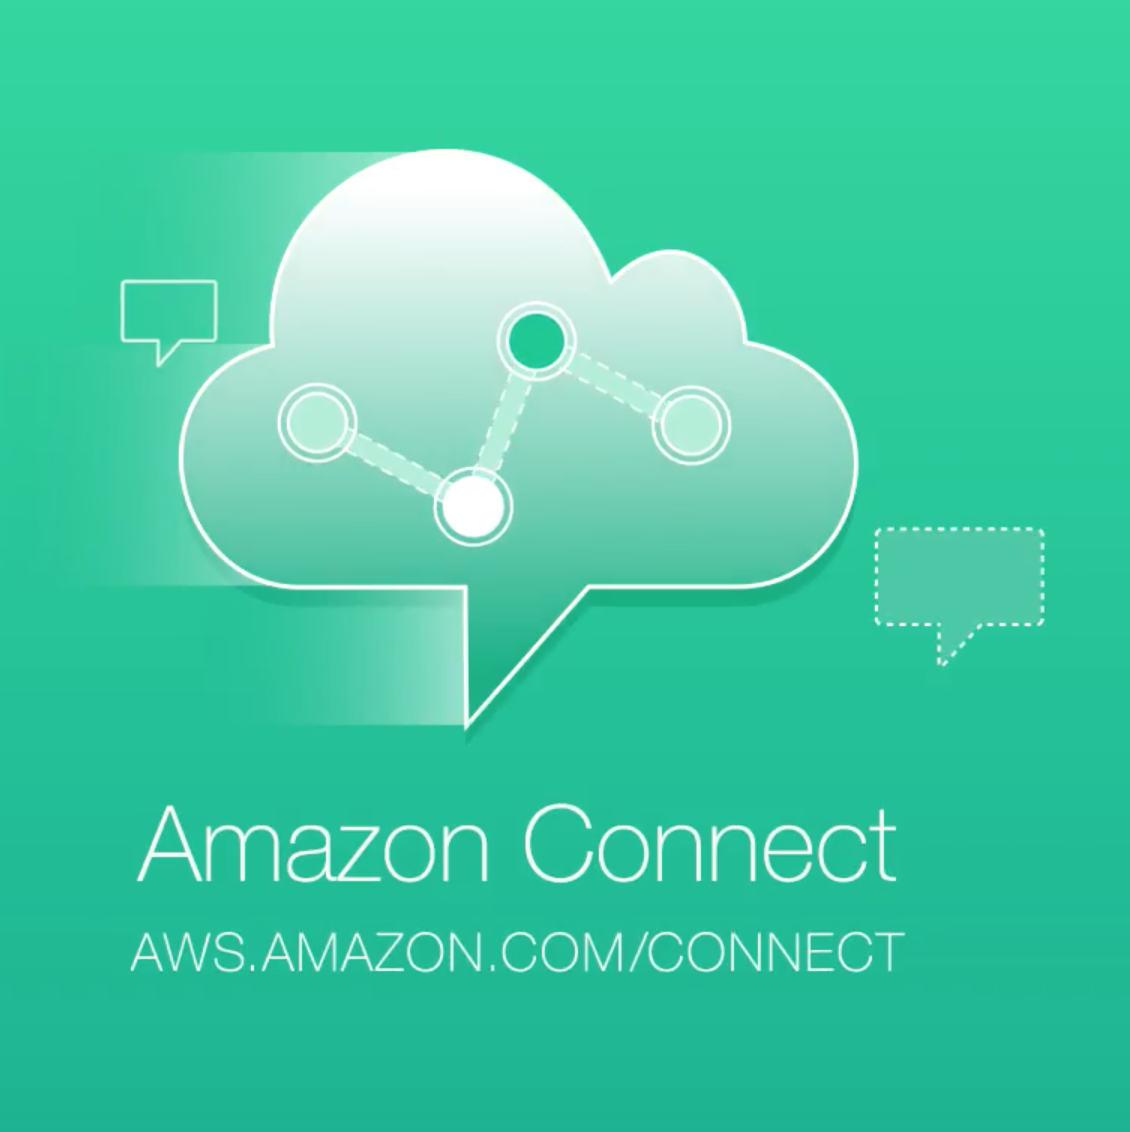 Amazon Connect